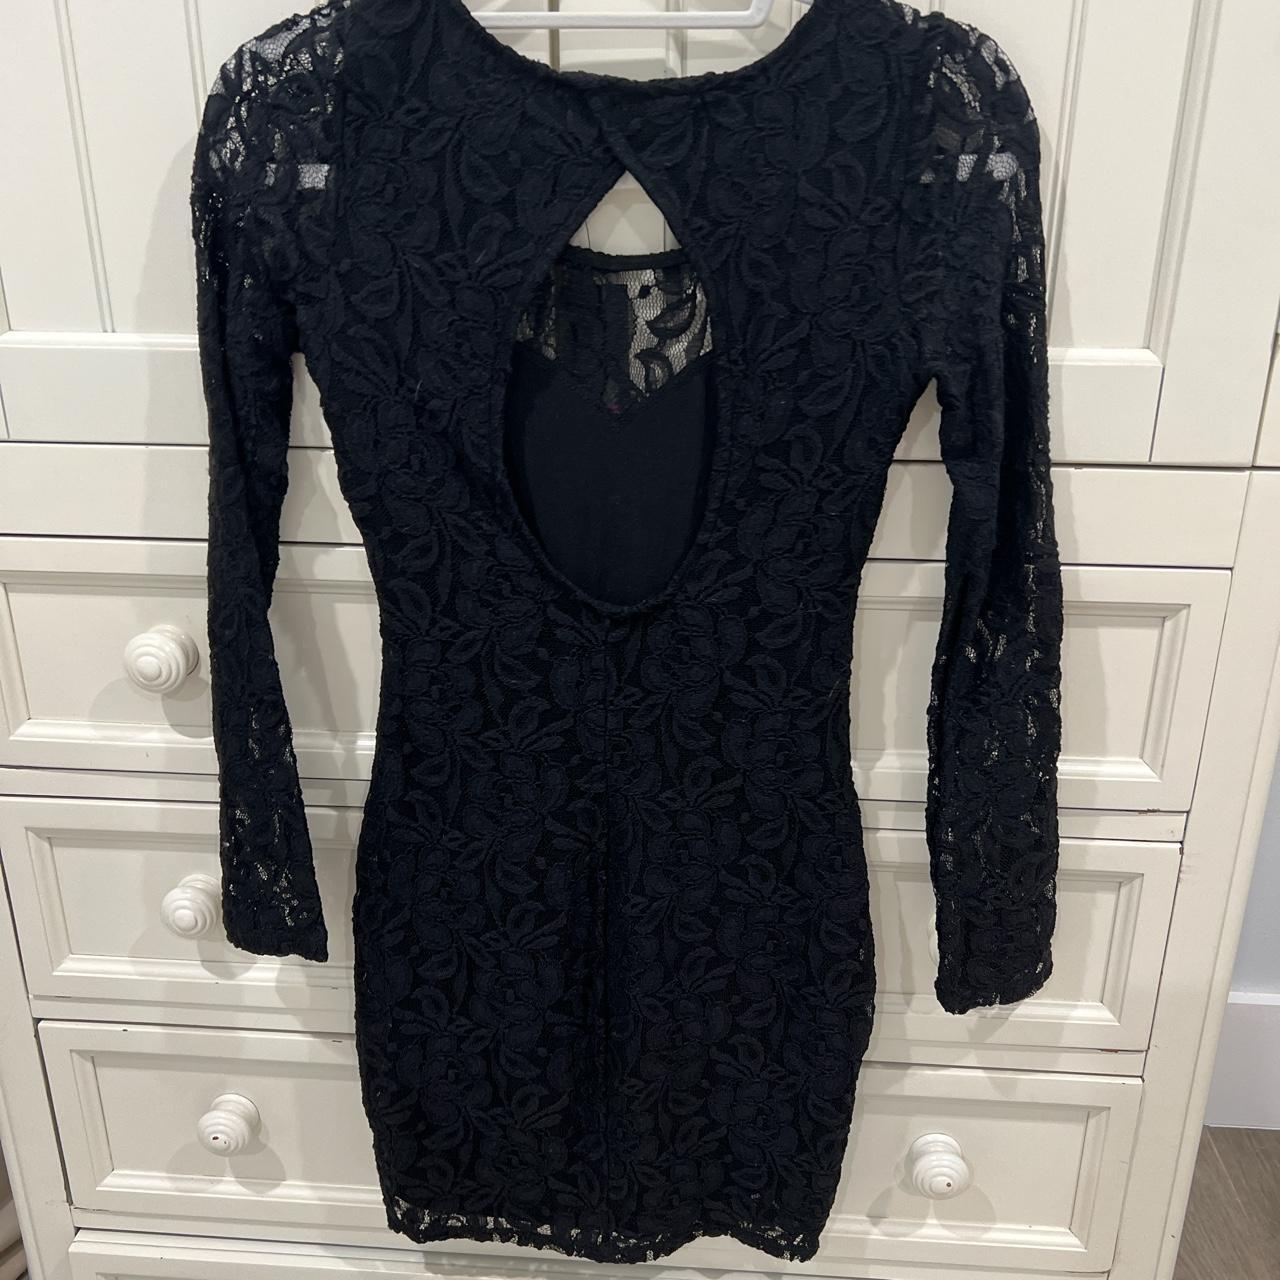 Macy's Women's Black Dress | Depop